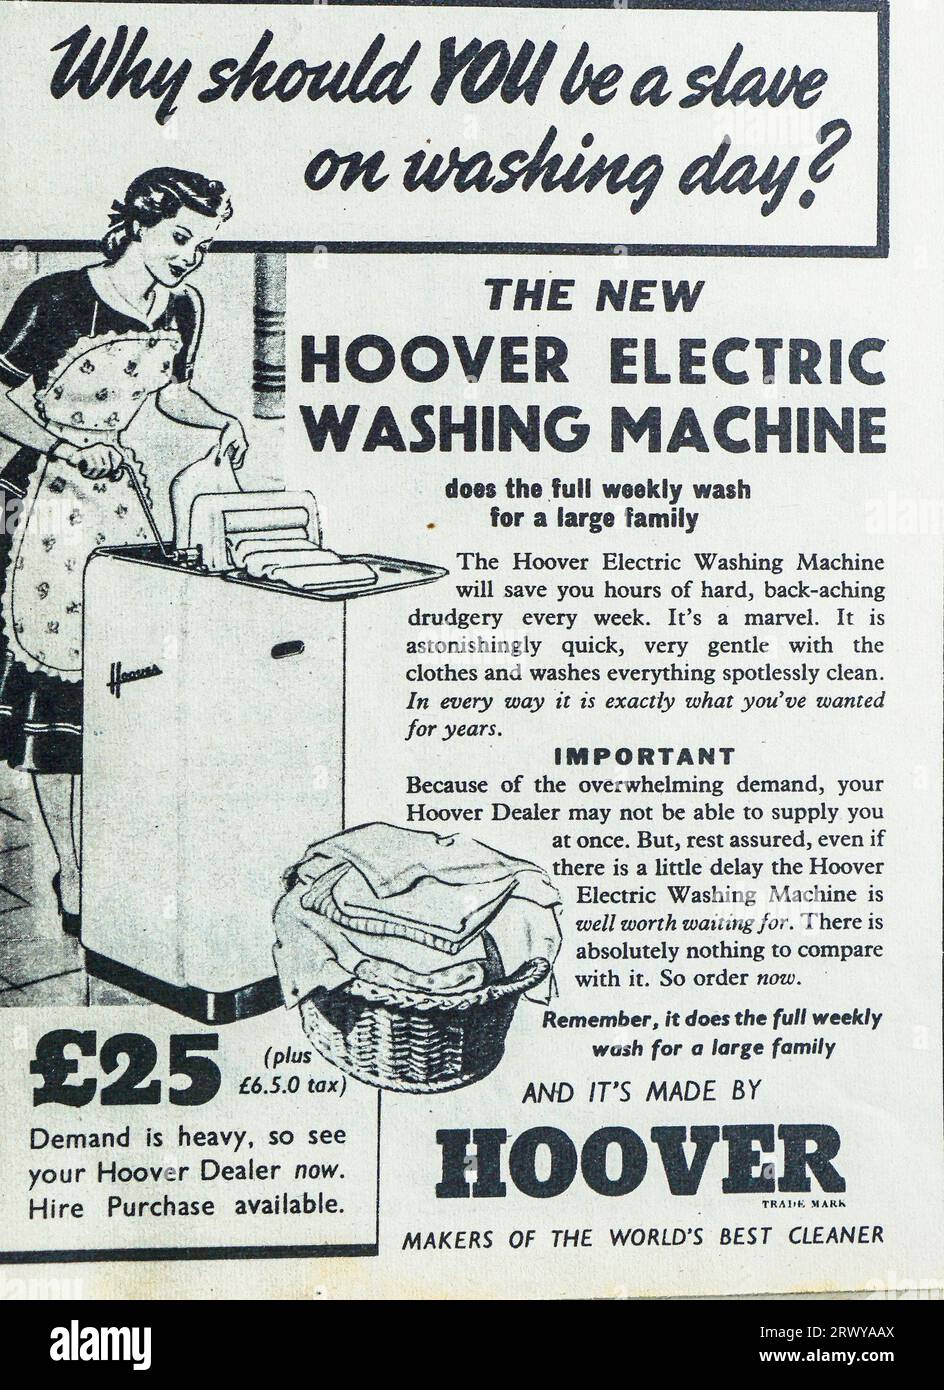 Eine Werbung aus dem Jahr 1950 für die neue elektrische Waschmaschine Hoover. Die Nachfrage nach der Maschine war laut Aussage sehr hoch, und es gab einen Mietkauf. Die Maschine „erspart Ihnen jede Woche stundenlange harte Arbeit, Rückenschmerzen“ und ist „in der Lage, die gesamte wöchentliche Wäsche für eine große Familie zu waschen“. Stockfoto